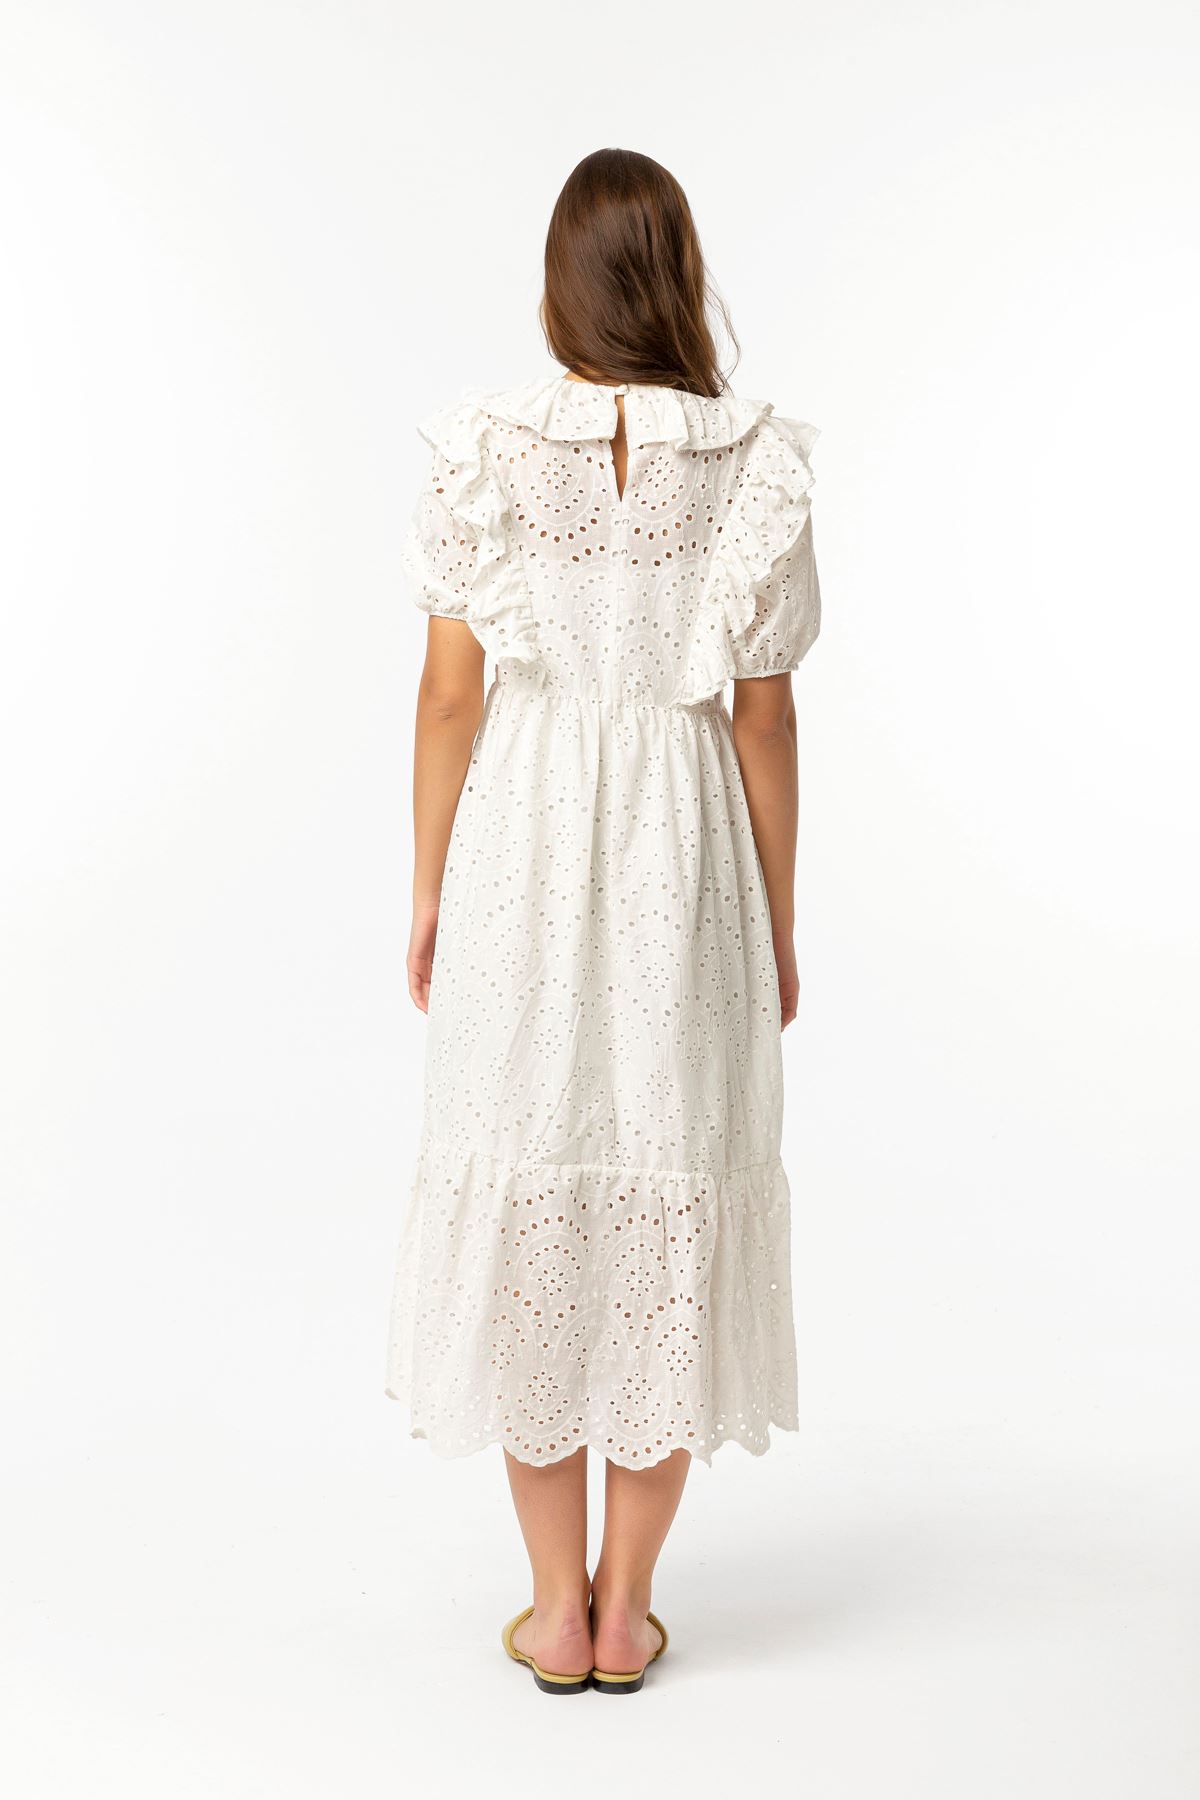 Вуаль Ткань короткий воротник с воланами женское платье - Молочный